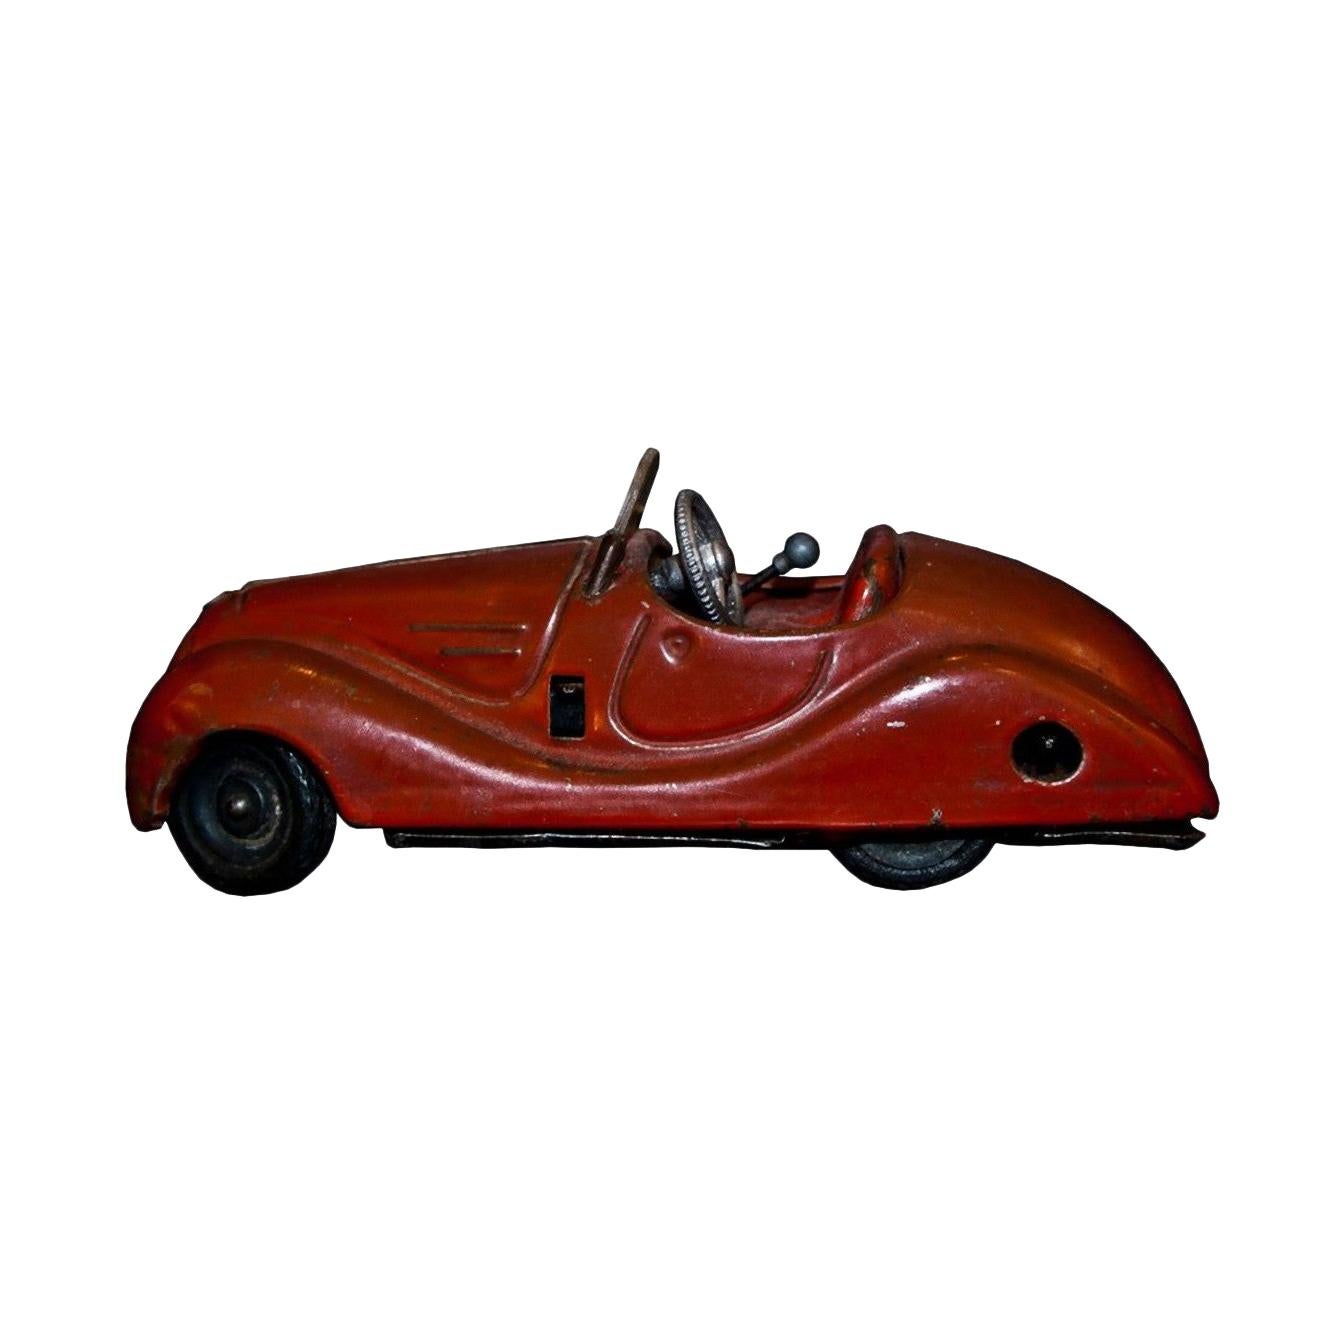 Vintage Toy, Schuco Examico 4001 Car, 1950s